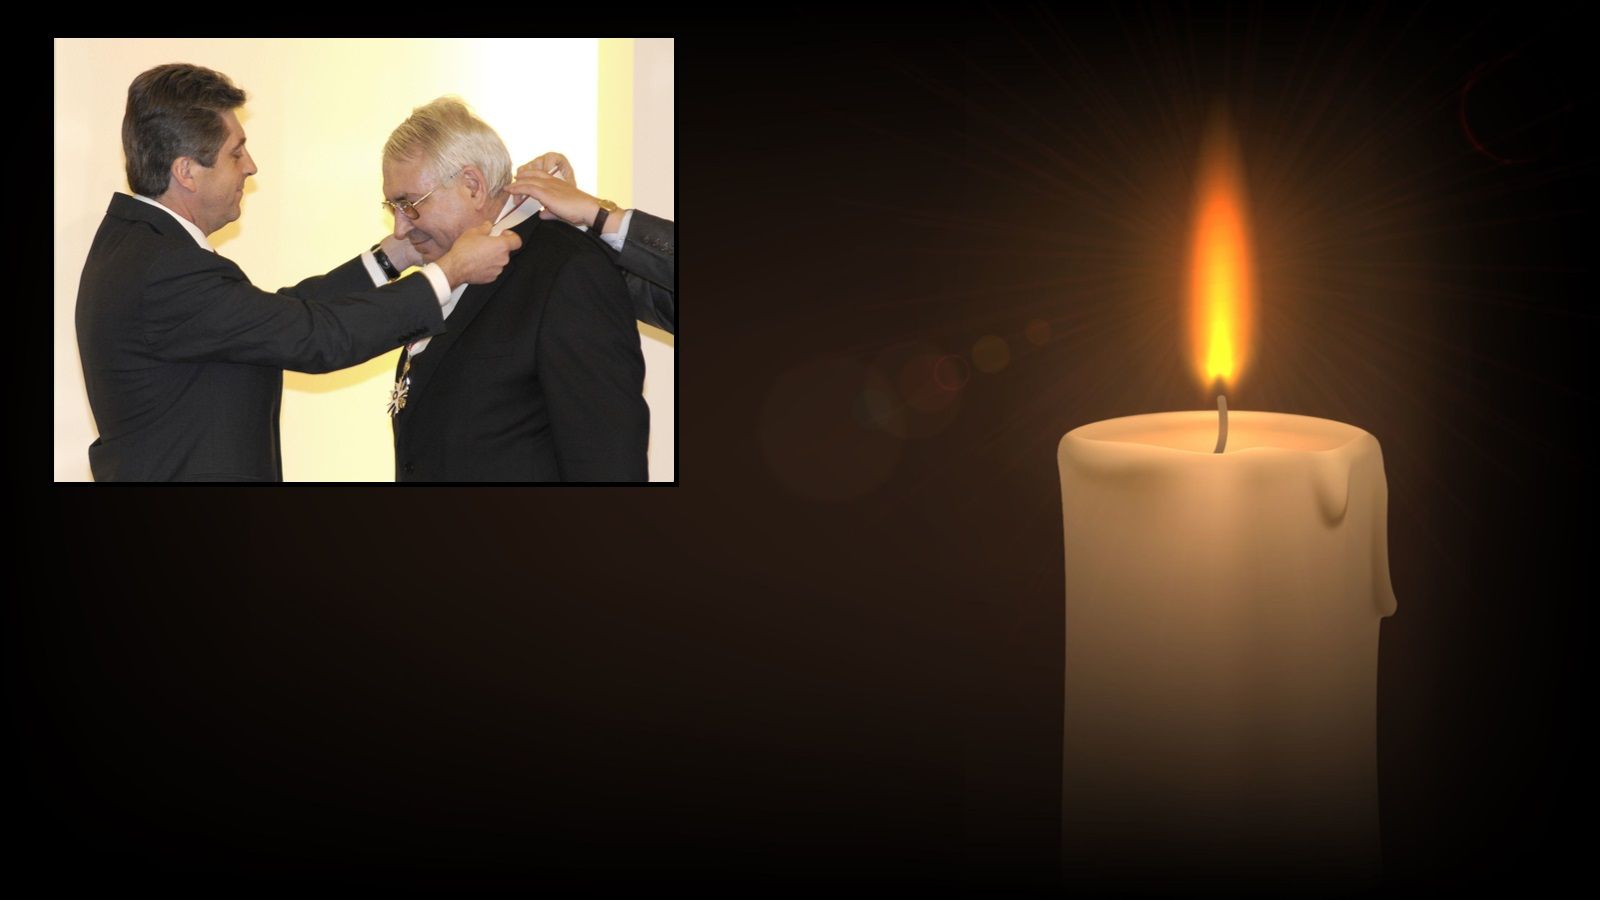 4 април 2008 г. - Президентът Георги Първанов връчва орден "Стара планина"-първа степен на проф. Любен Корнезов за укрепване на държавността, за дейността му като изтъкнат юрист и научен работник и по повод неговия 60-годишен юбилей; Снимка: "Булфото"